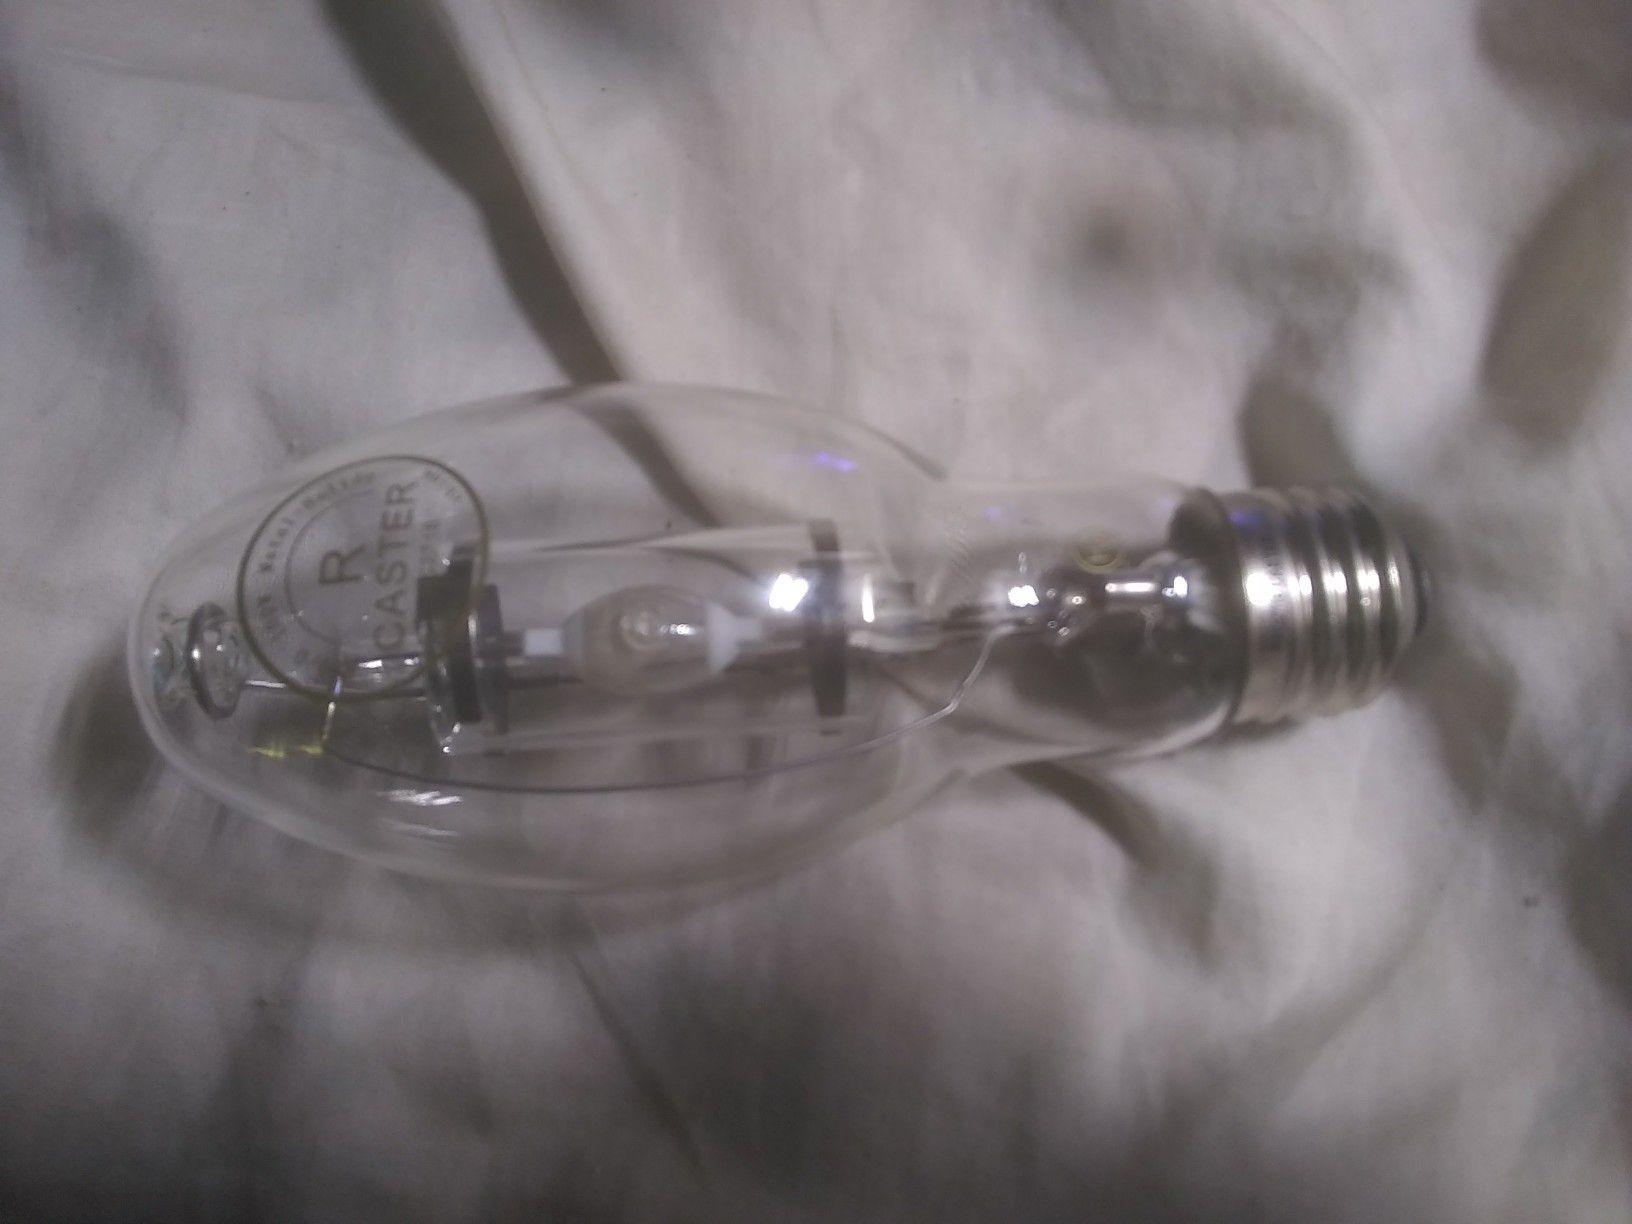 Caster, 100 watt MH bulb, 4200k